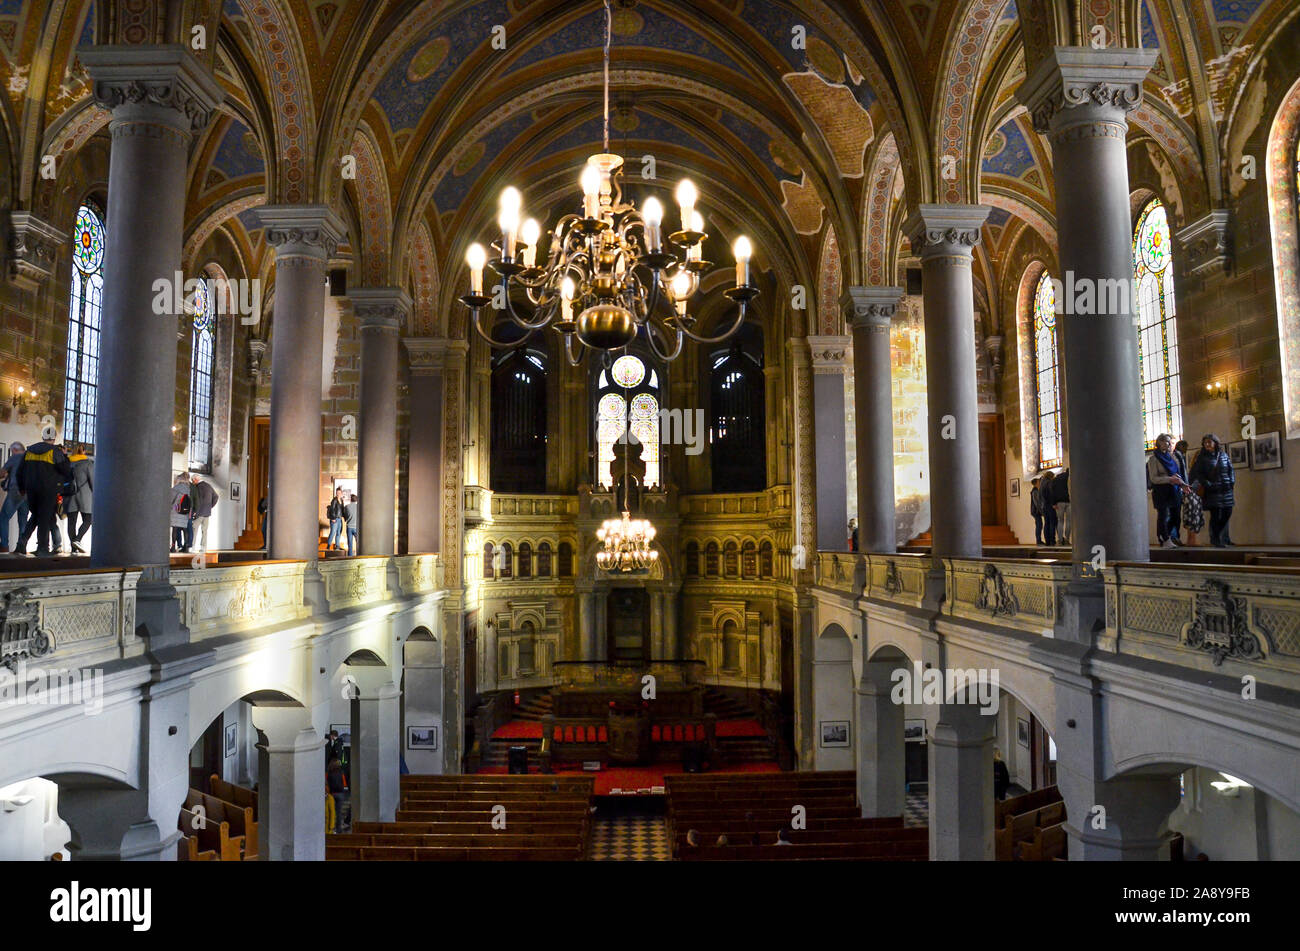 Pilsen, République tchèque - Oct 28, 2019 : l'intérieur de la Grande Synagogue. La deuxième plus grande synagogue d'Europe. Photographié depuis le balcon. Piliers et arcades, plafond. Les gens sur les visites. Banque D'Images